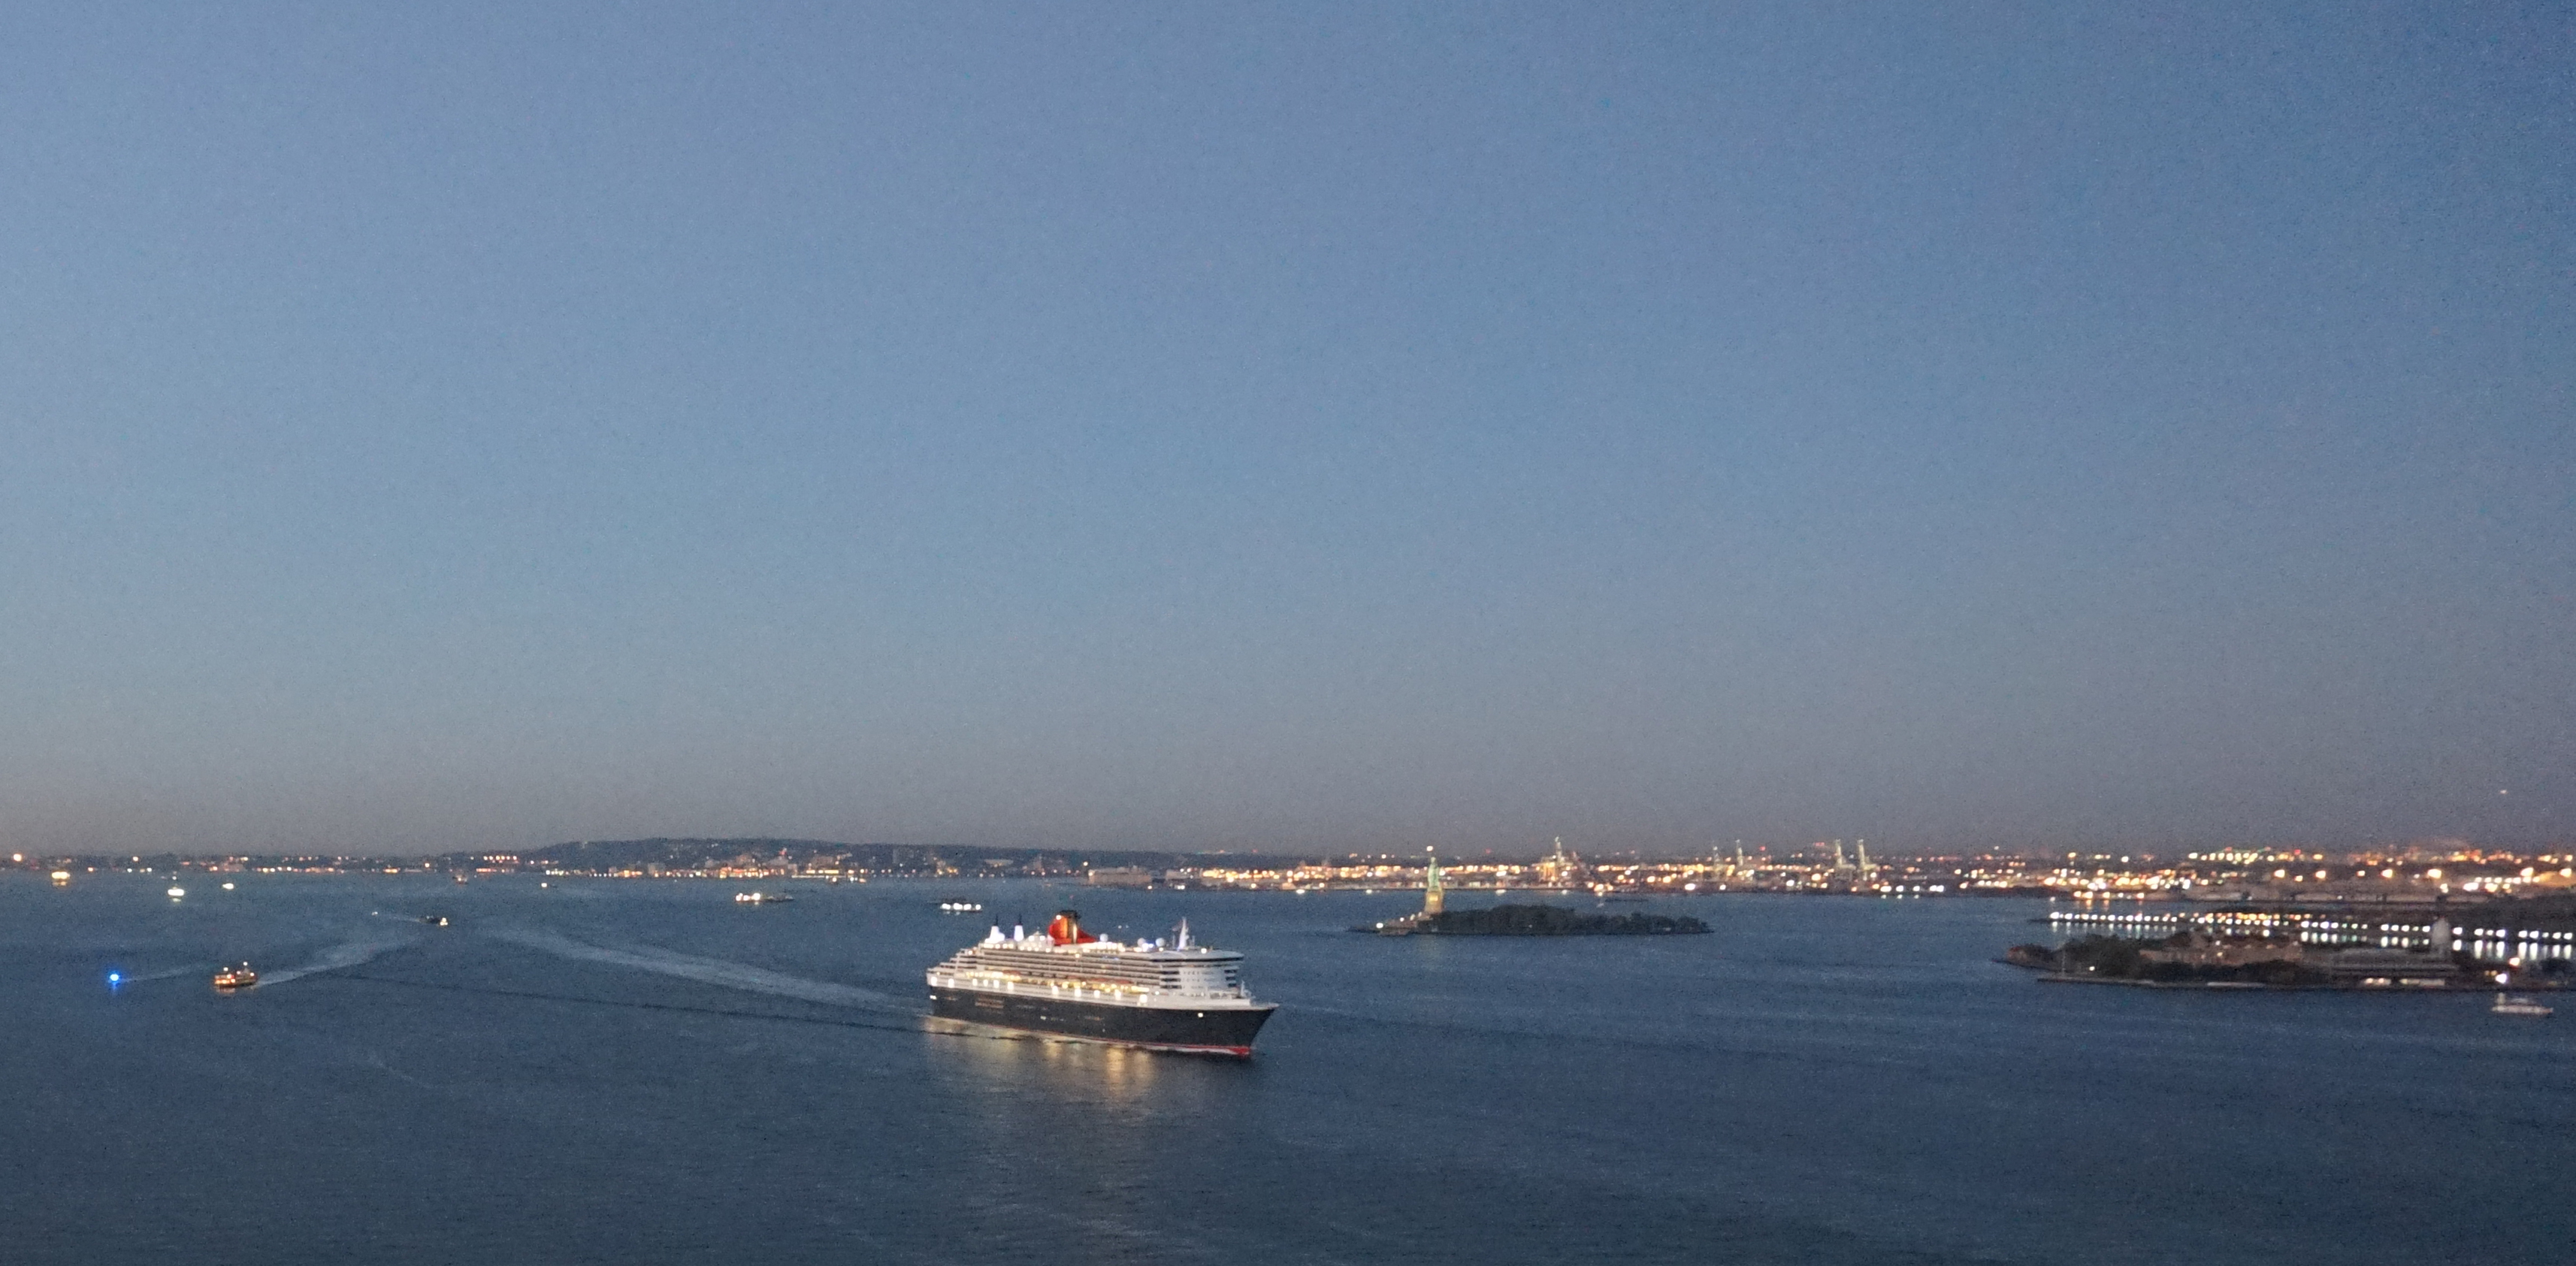 Queen Mary in port